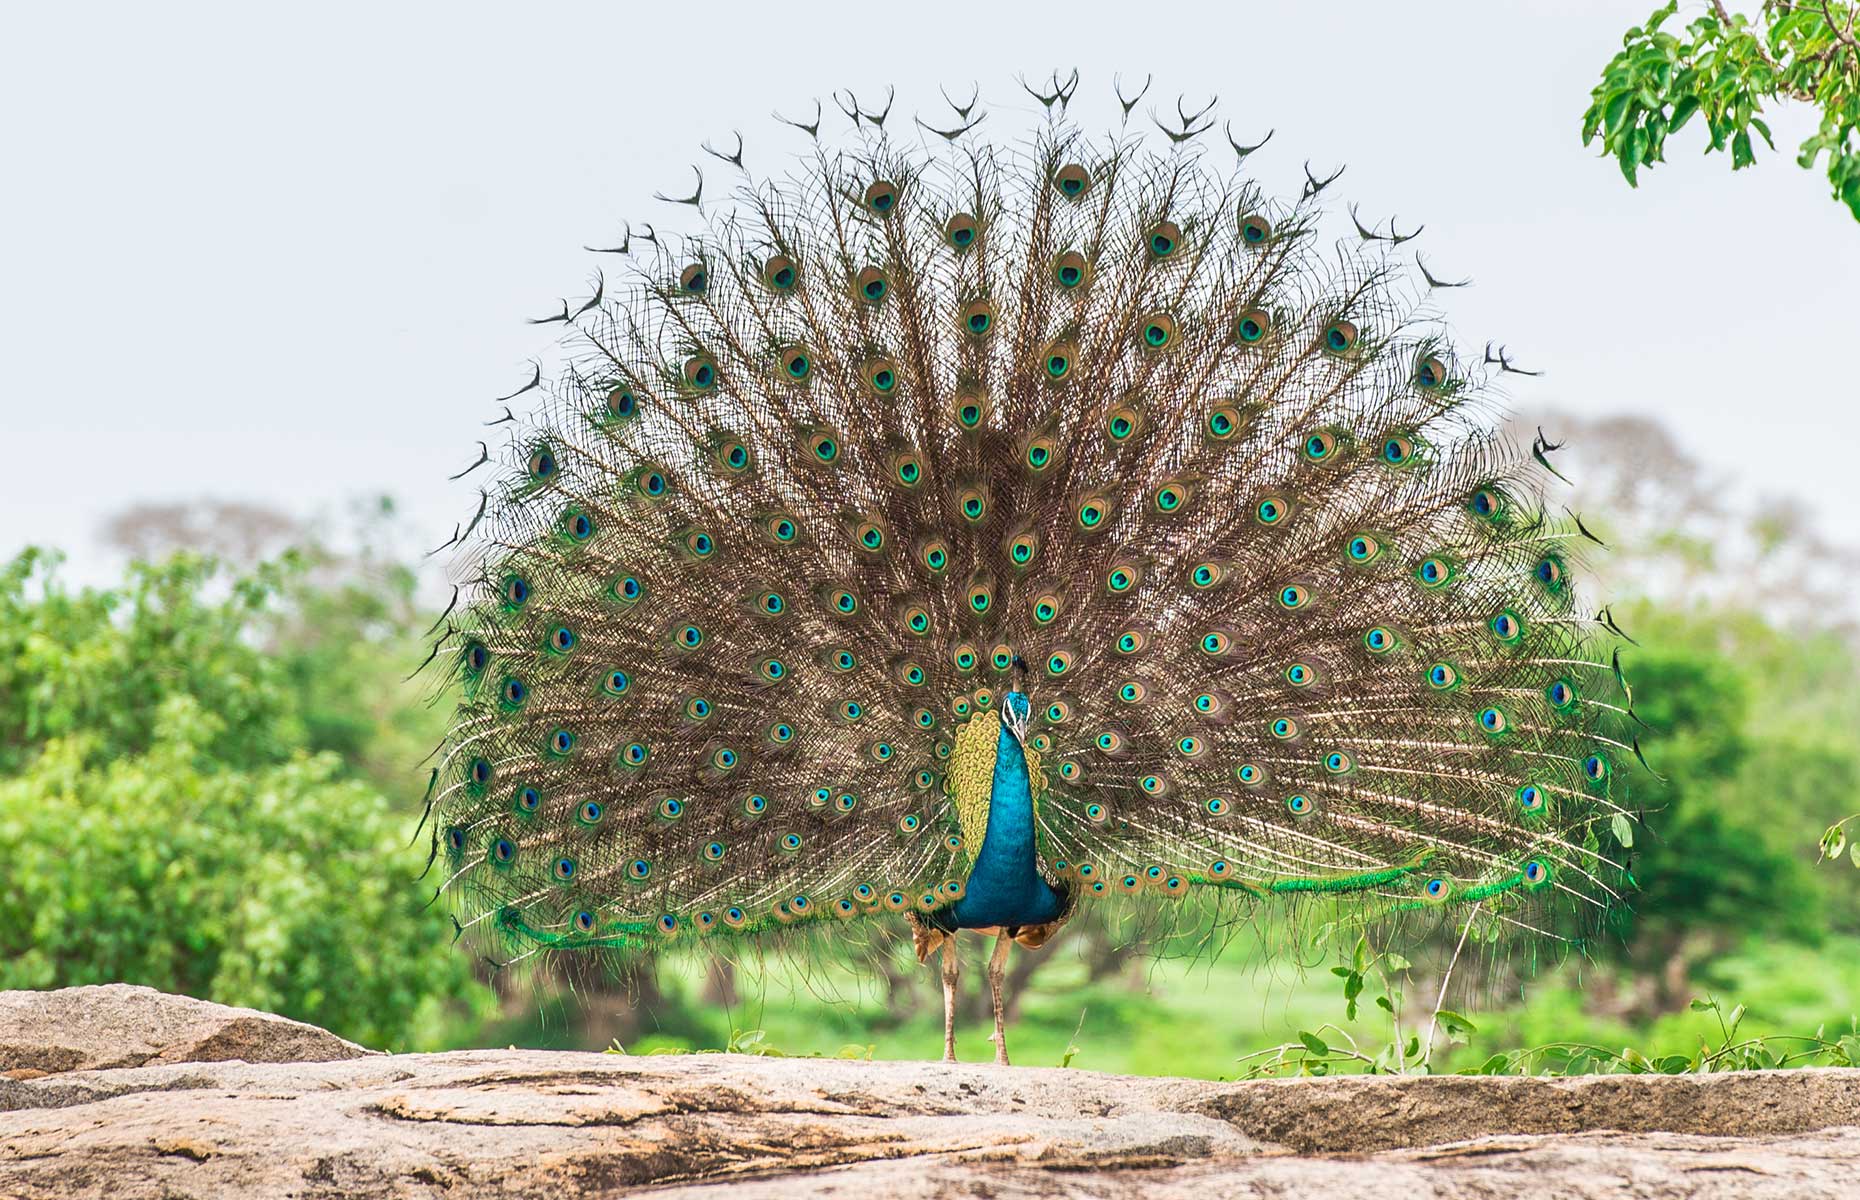 Peacock in Yala National Park (Image: Jelena Ivanovic/Shutterstock)